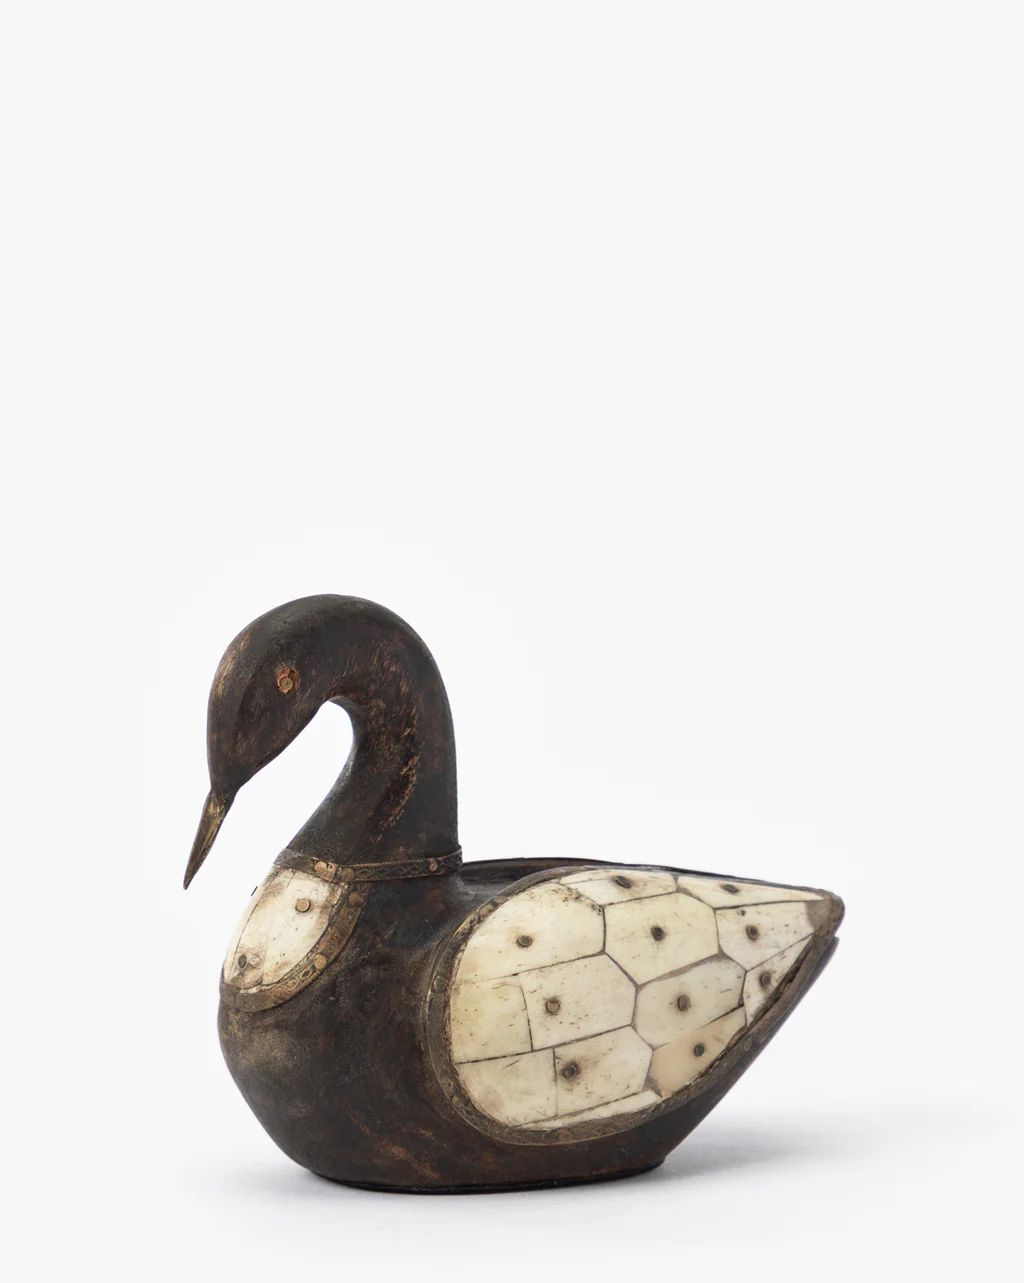 Zella Swan Object | McGee & Co.